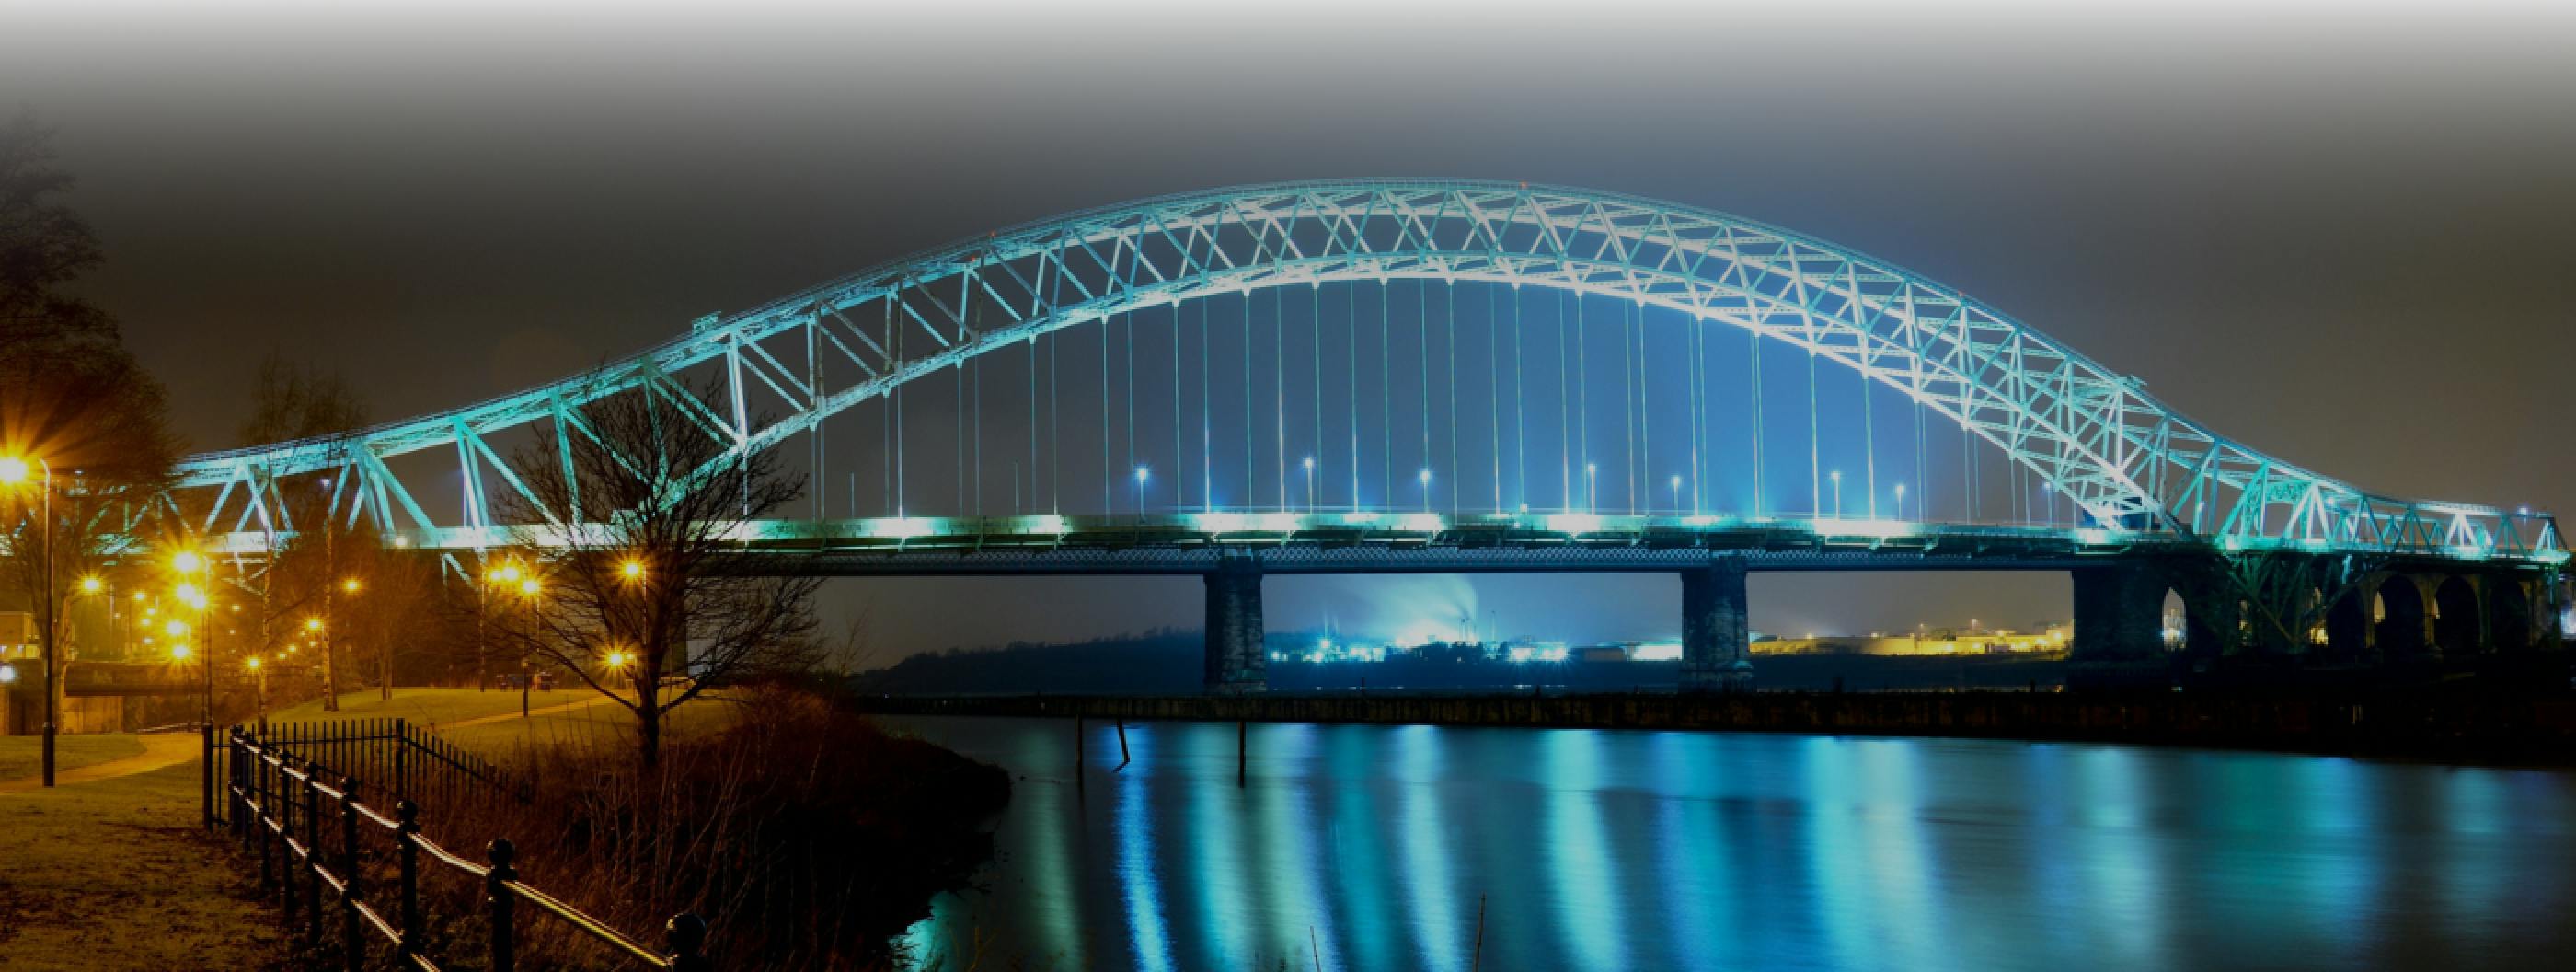 Silver Jubilee Bridge Mersey toll